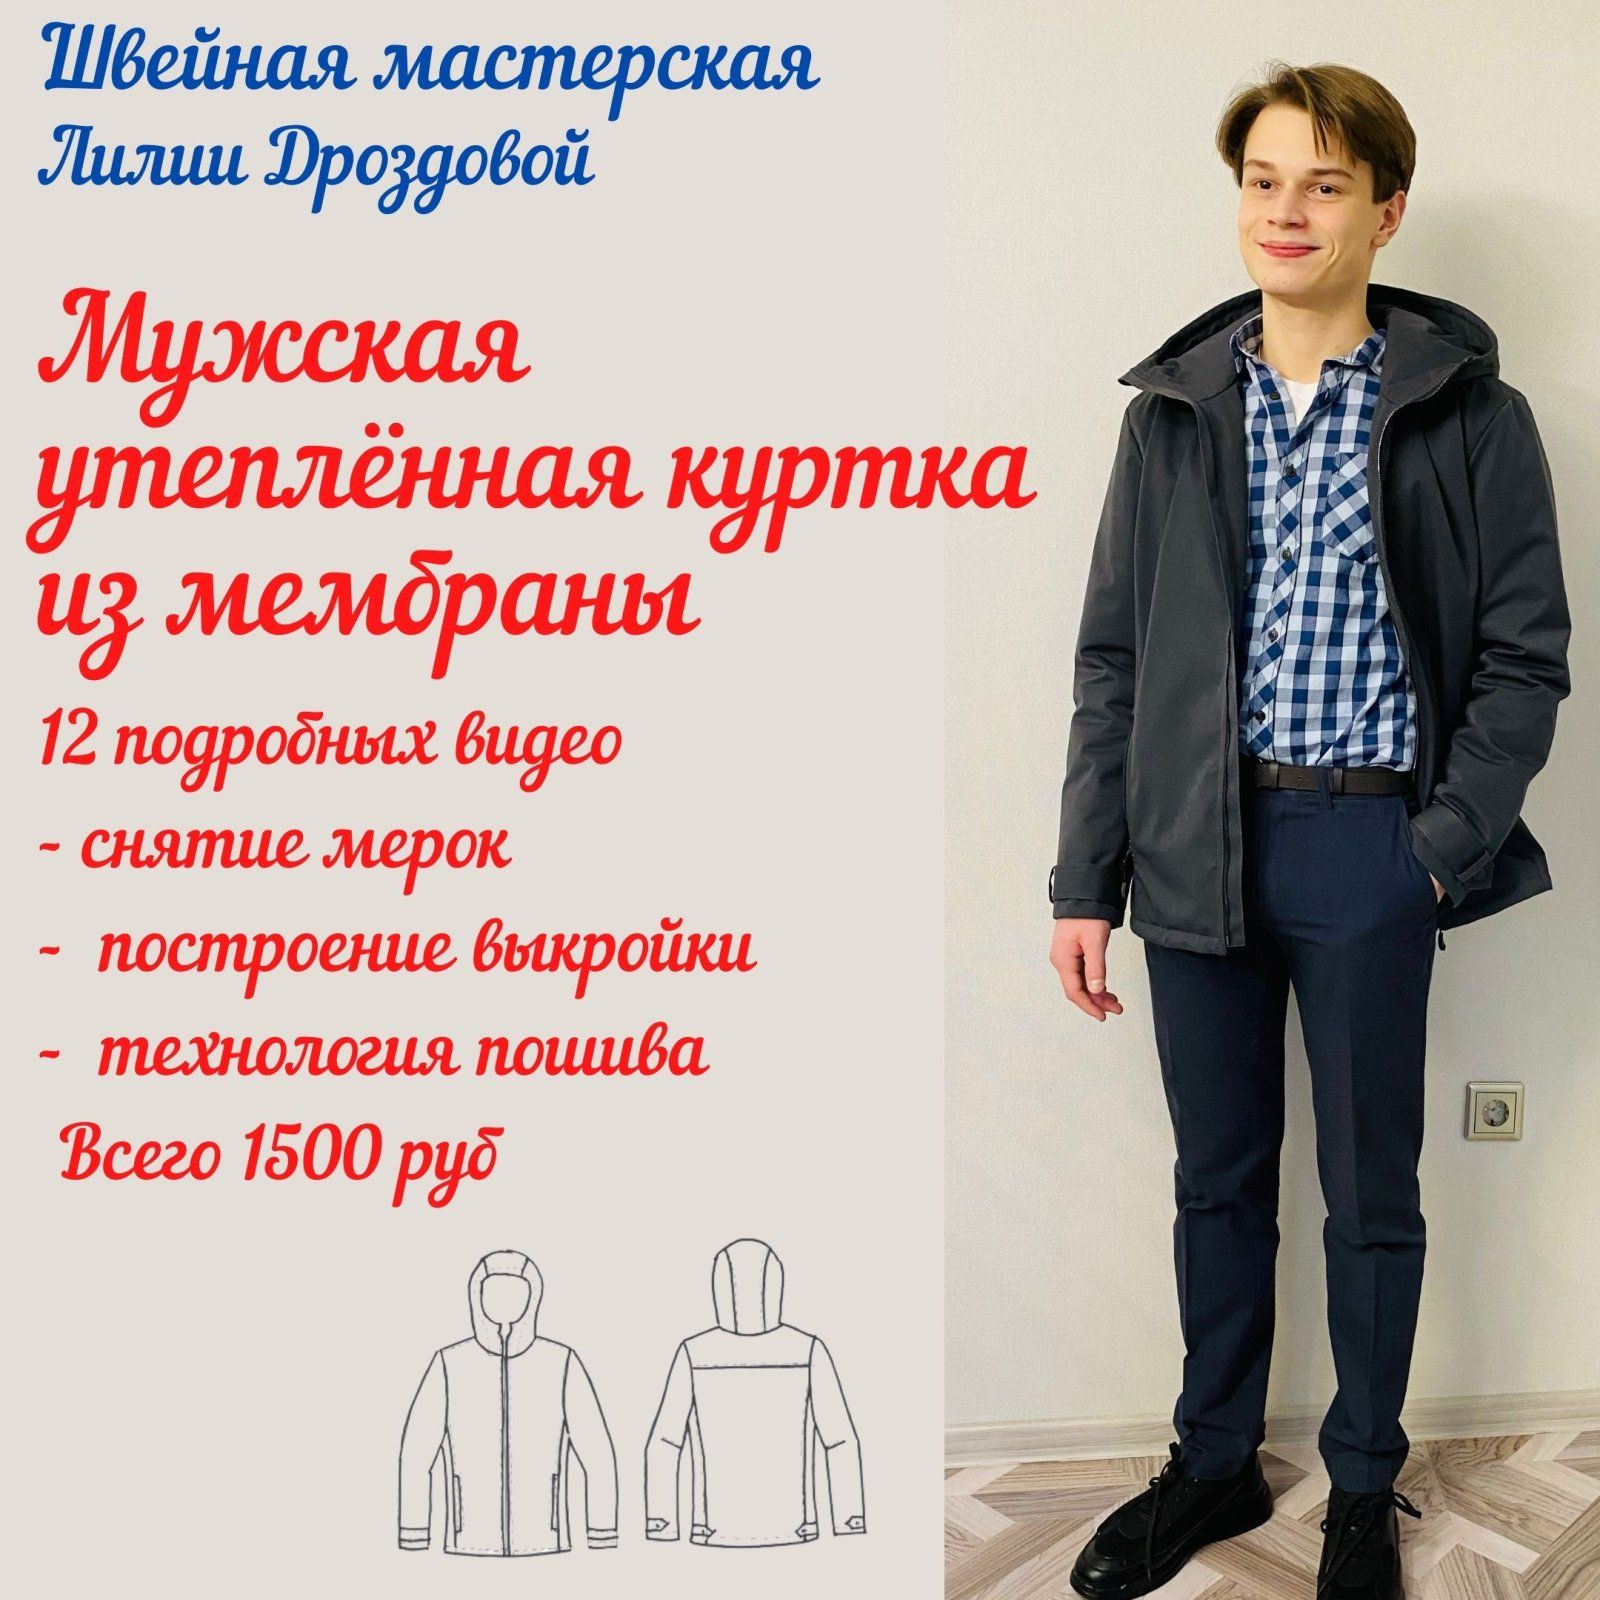 Изображение [Лилия Дроздова] [lili_drozdova_sewing] [Шитье] Видеокурс "Мужская утеплённая куртка из мембраны" (2022) в посте 260961